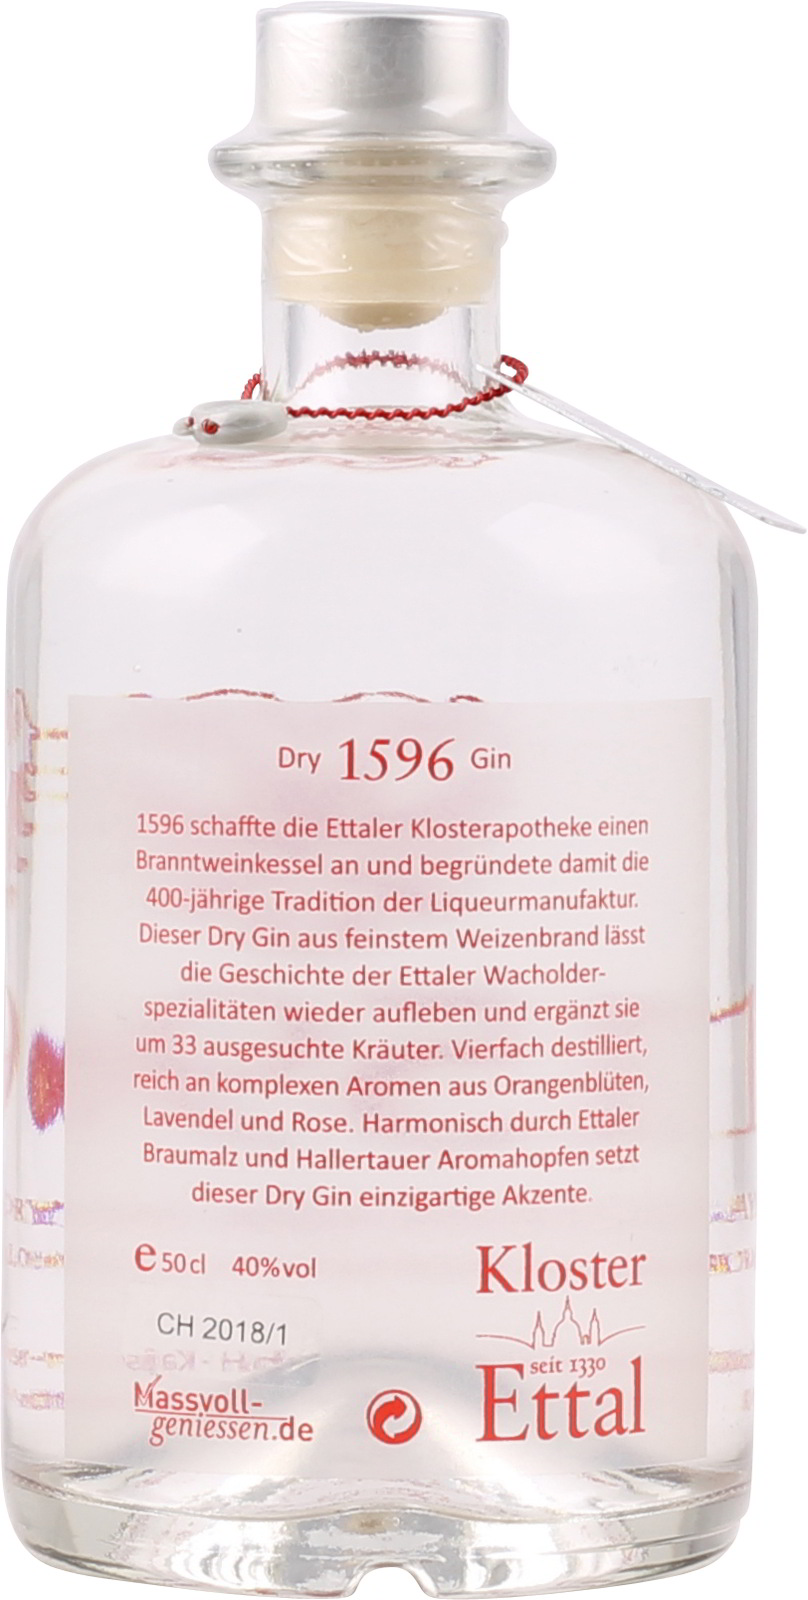 Liter % Vol. Ettaler 40 Bayerischer 0,5 1596 Dry Gin ei